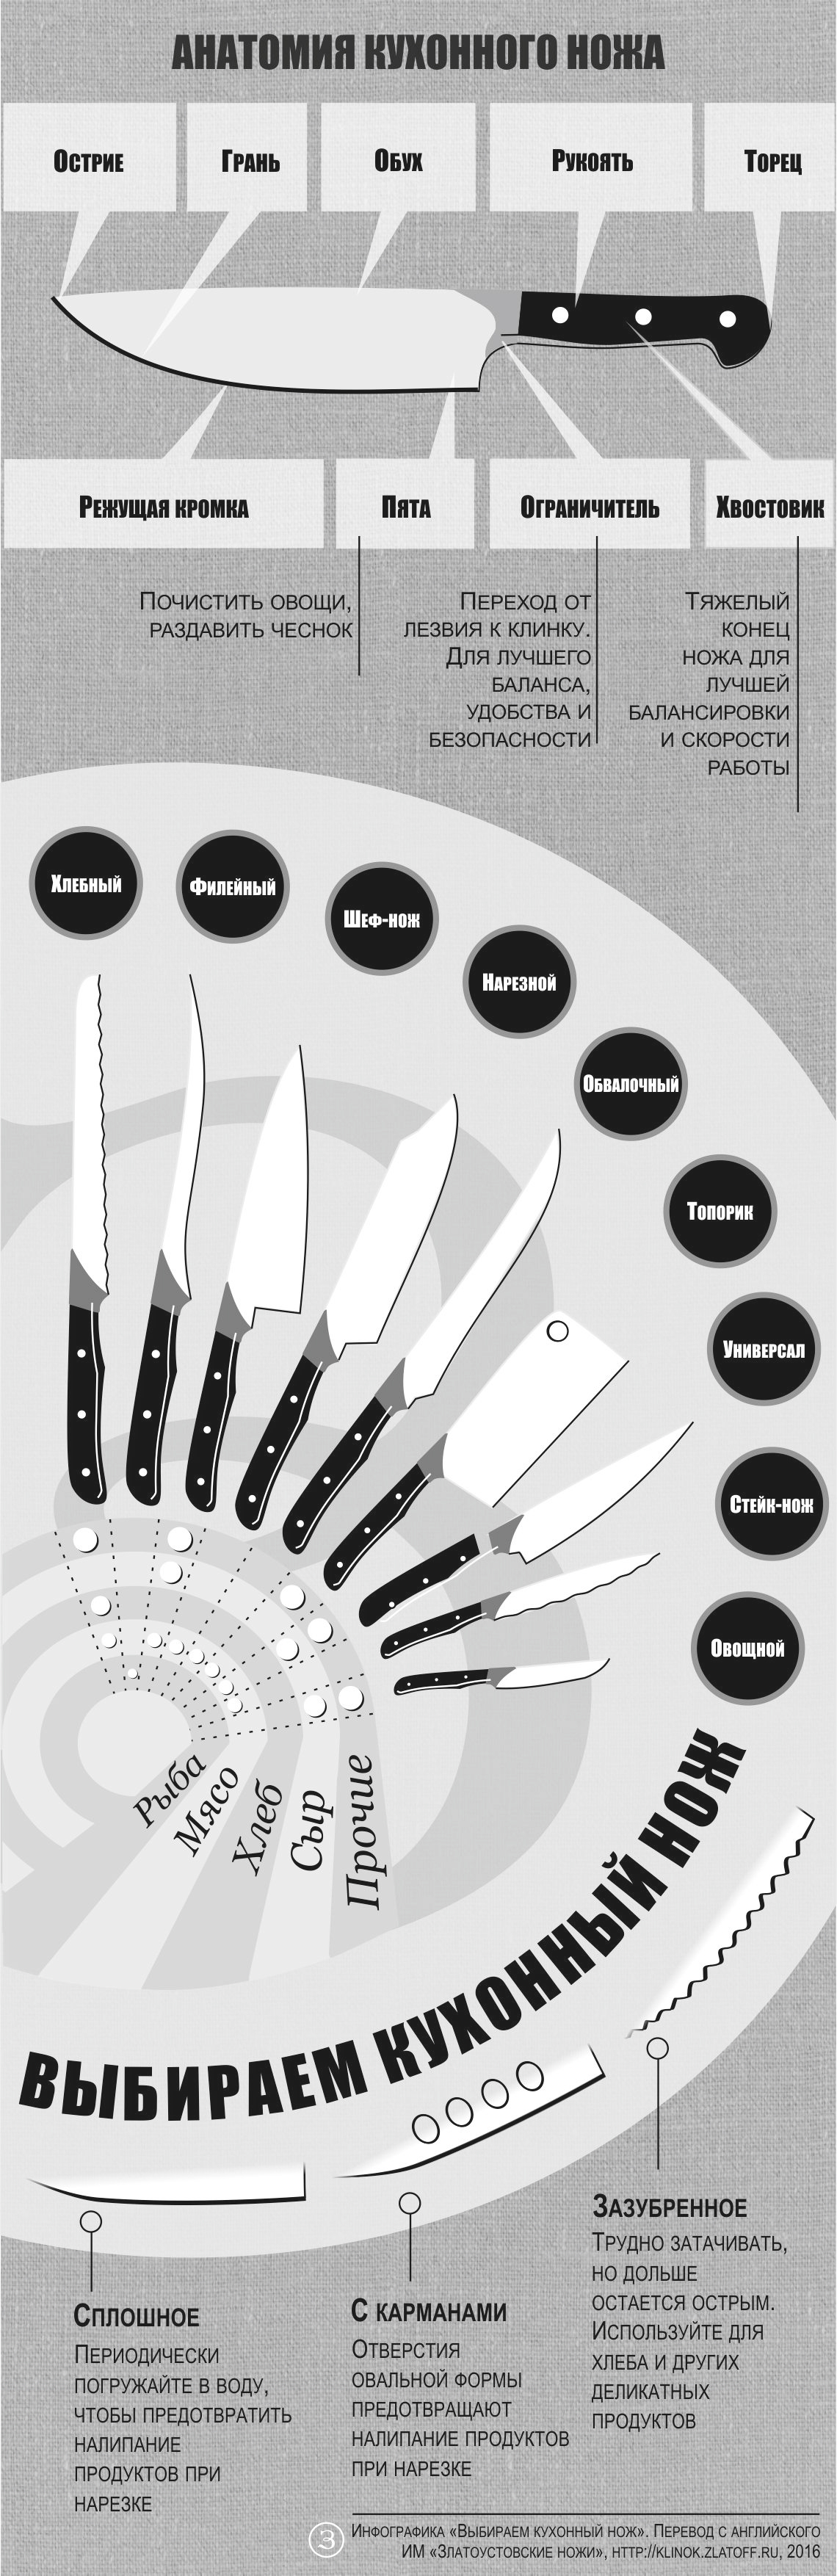 Какие бывают виды ножей для кухни